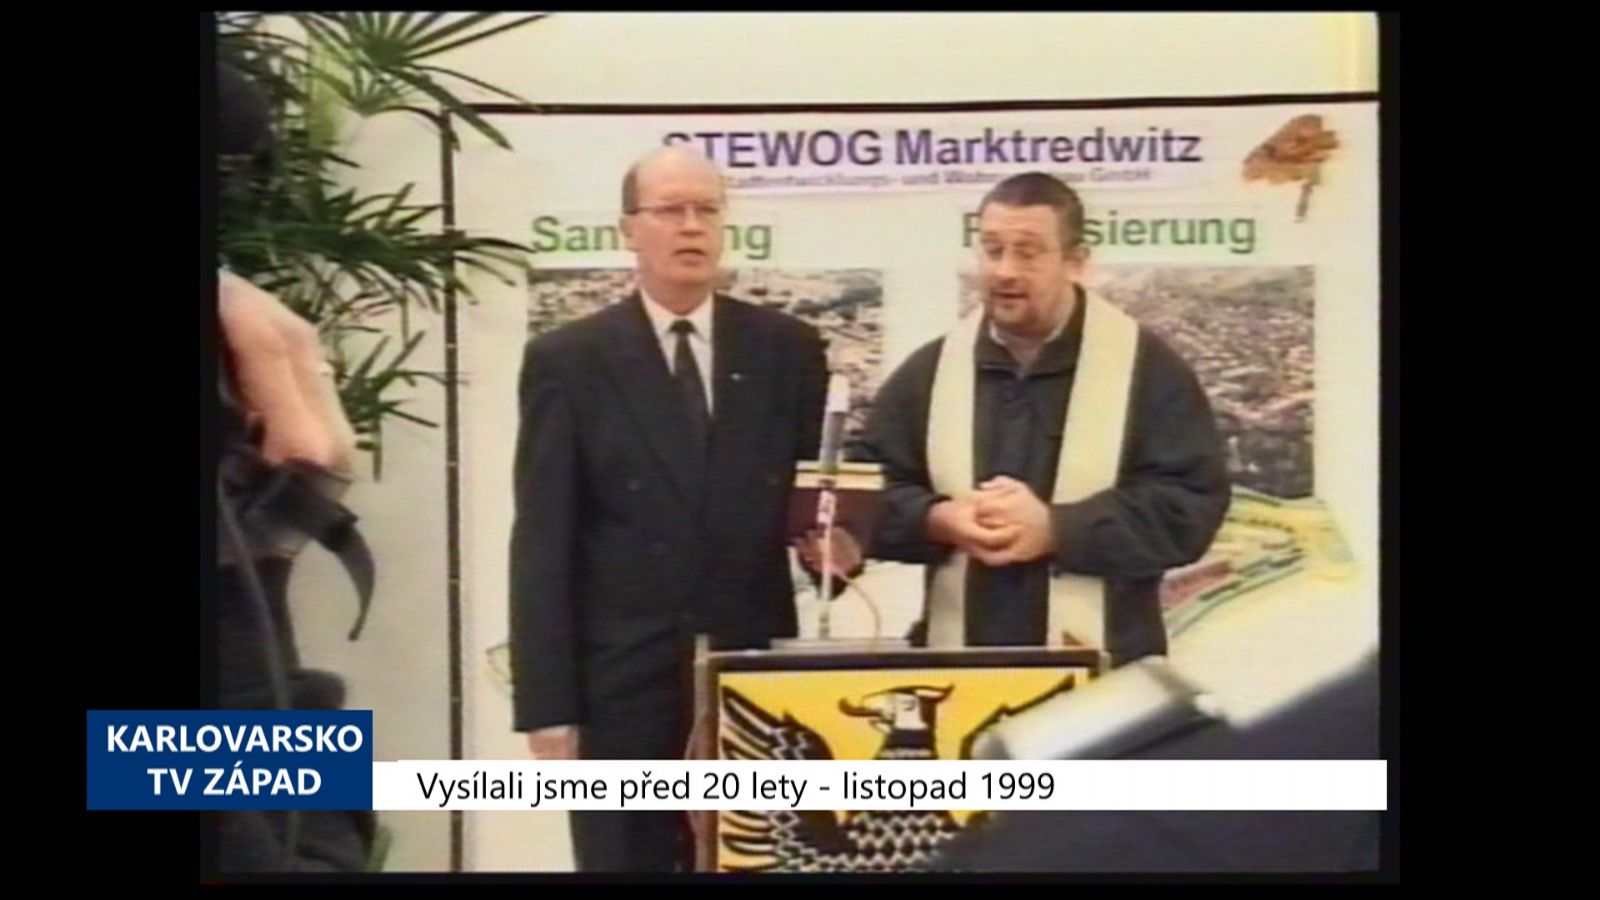 1999 – Marktredwitz: Nová hala nabídne 820 parkovacích míst (TV Západ)